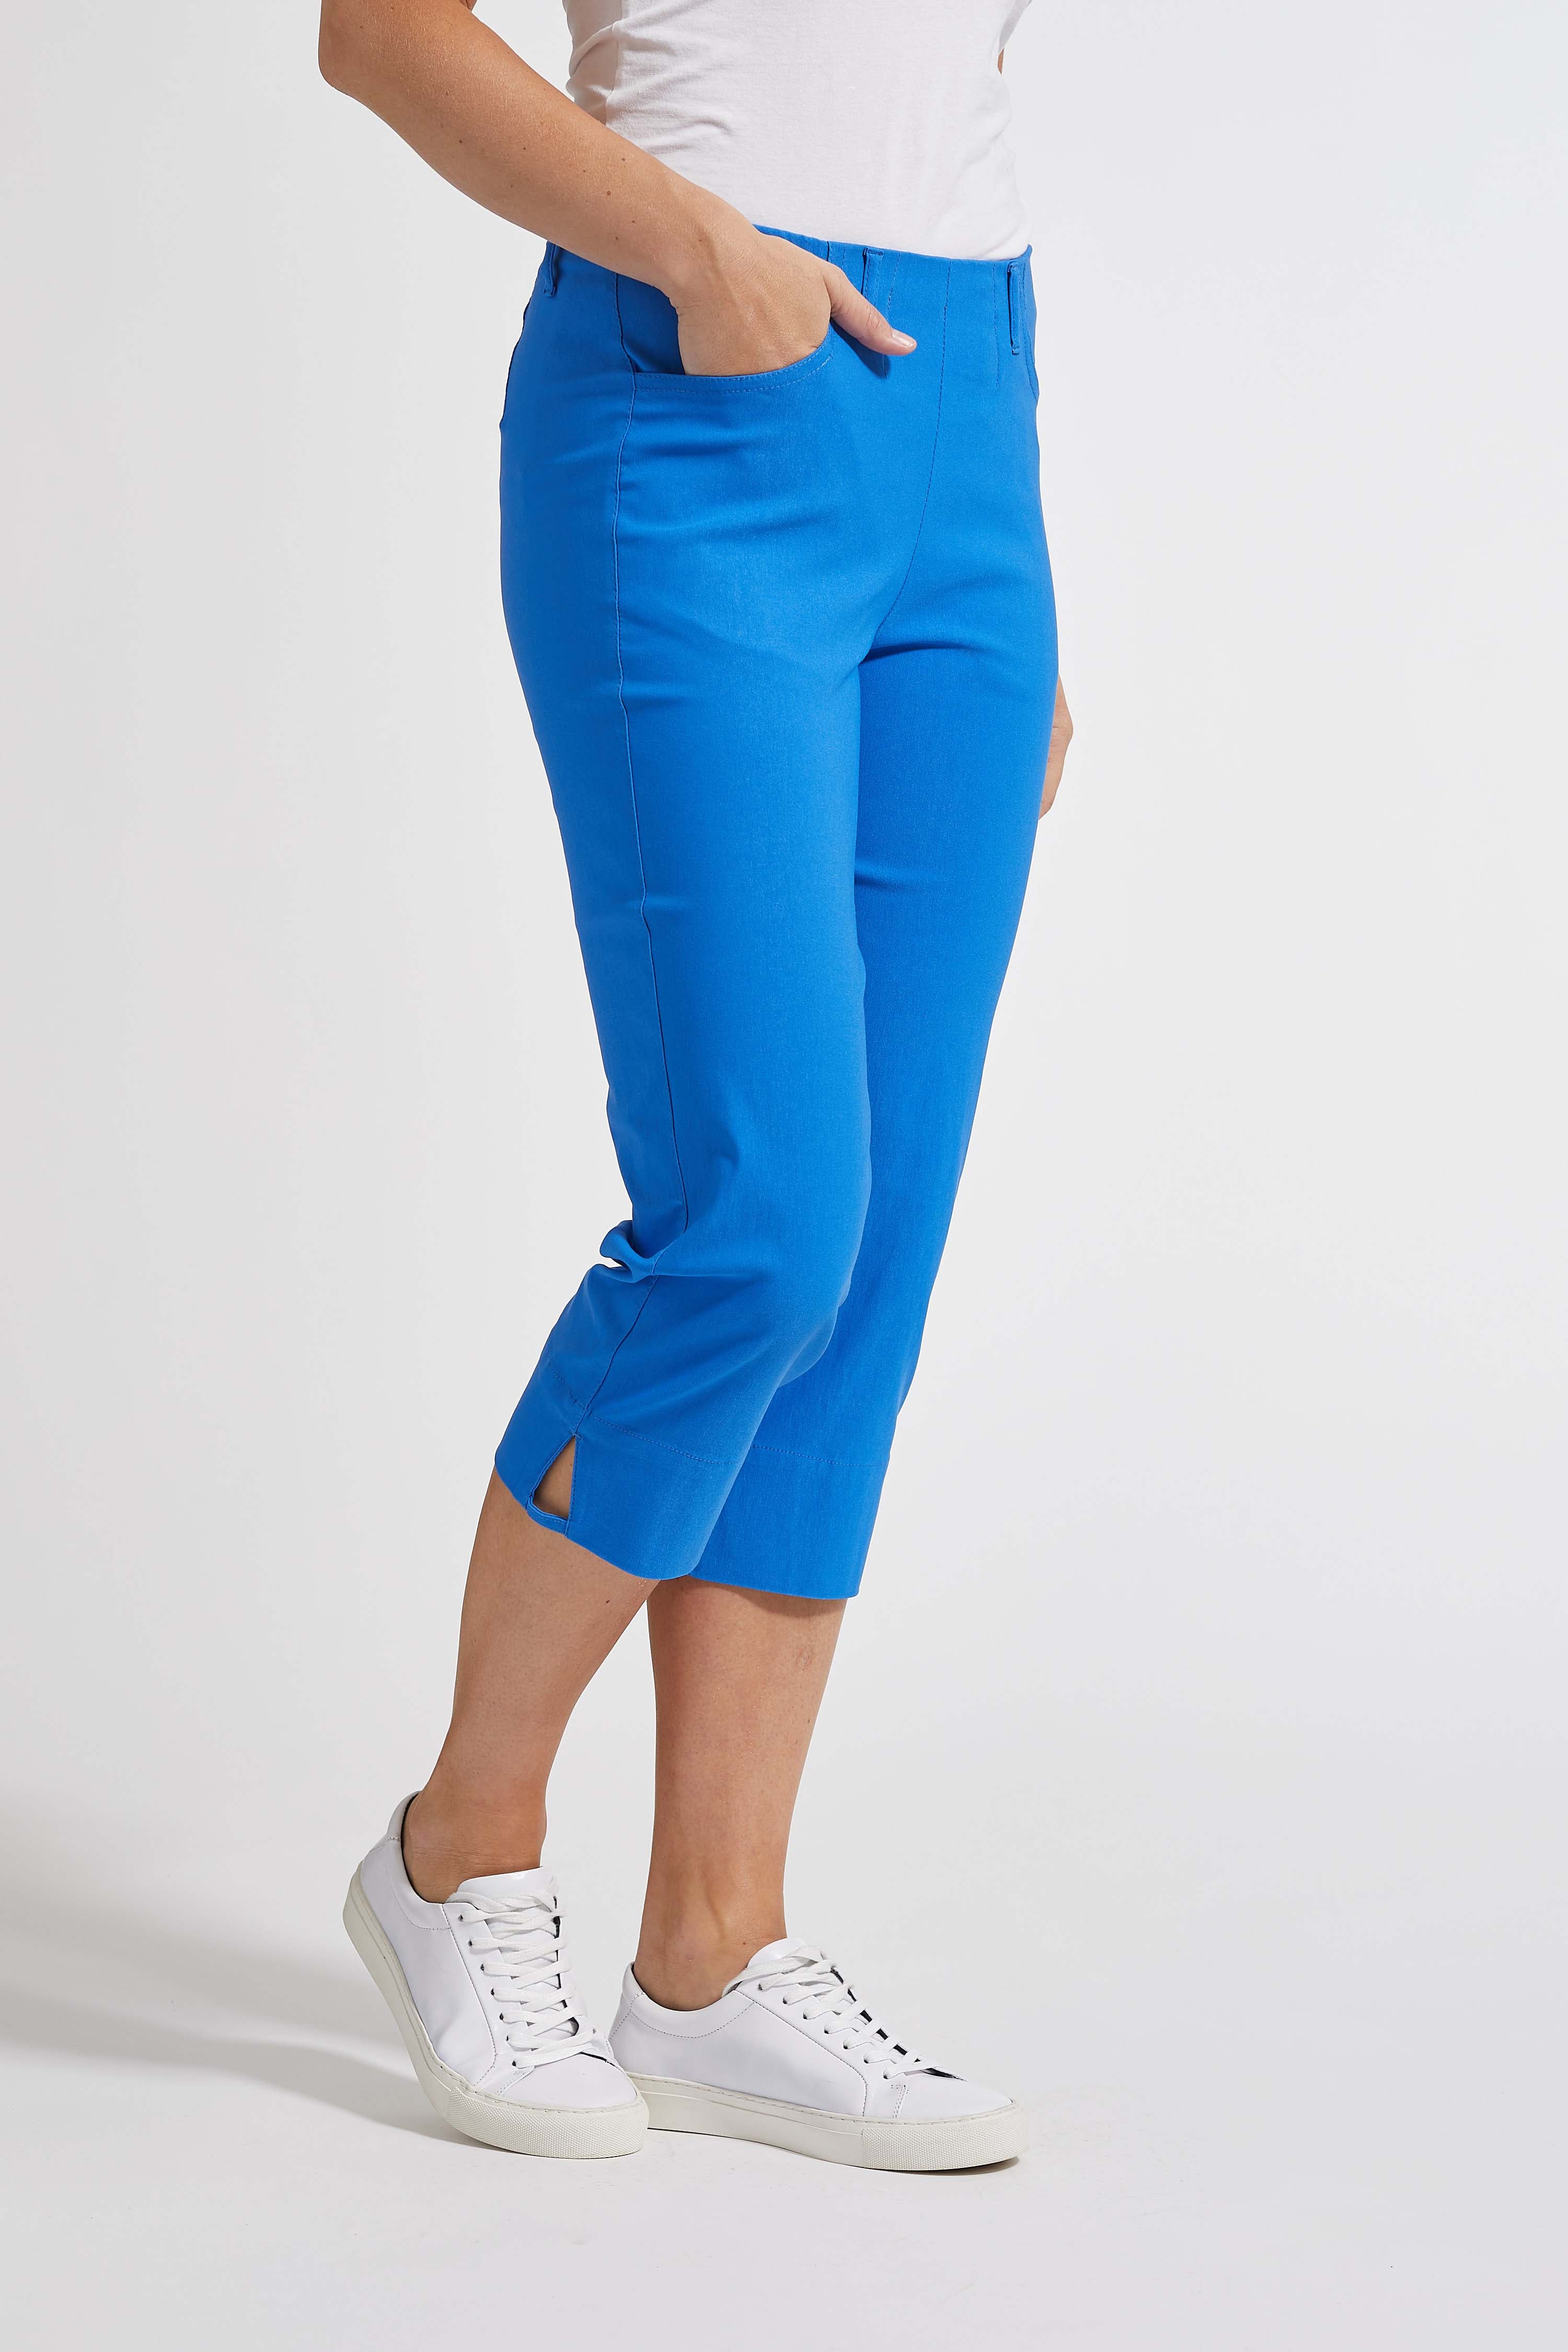 LAURIE  Anabelle Regular Capri ML Trousers REGULAR 45102 Strong Blue